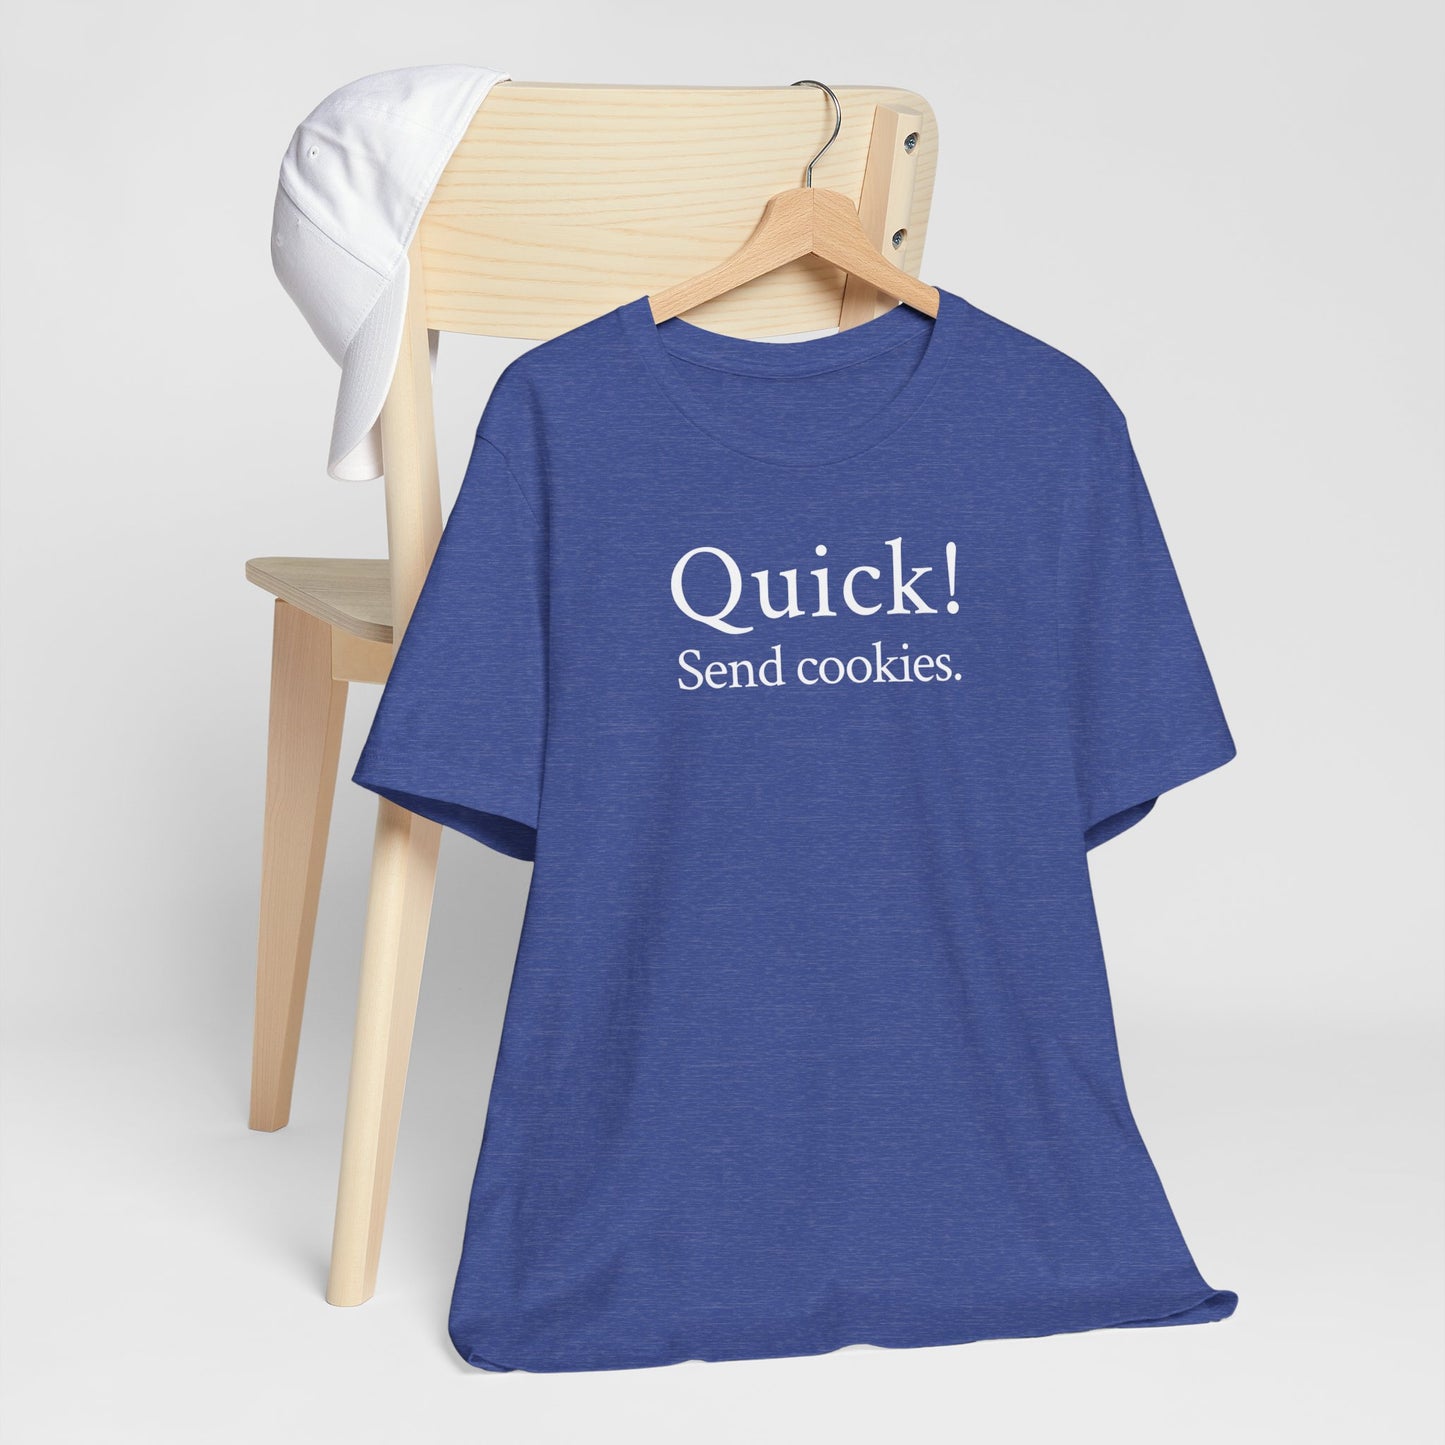 Quick! Send cookies.